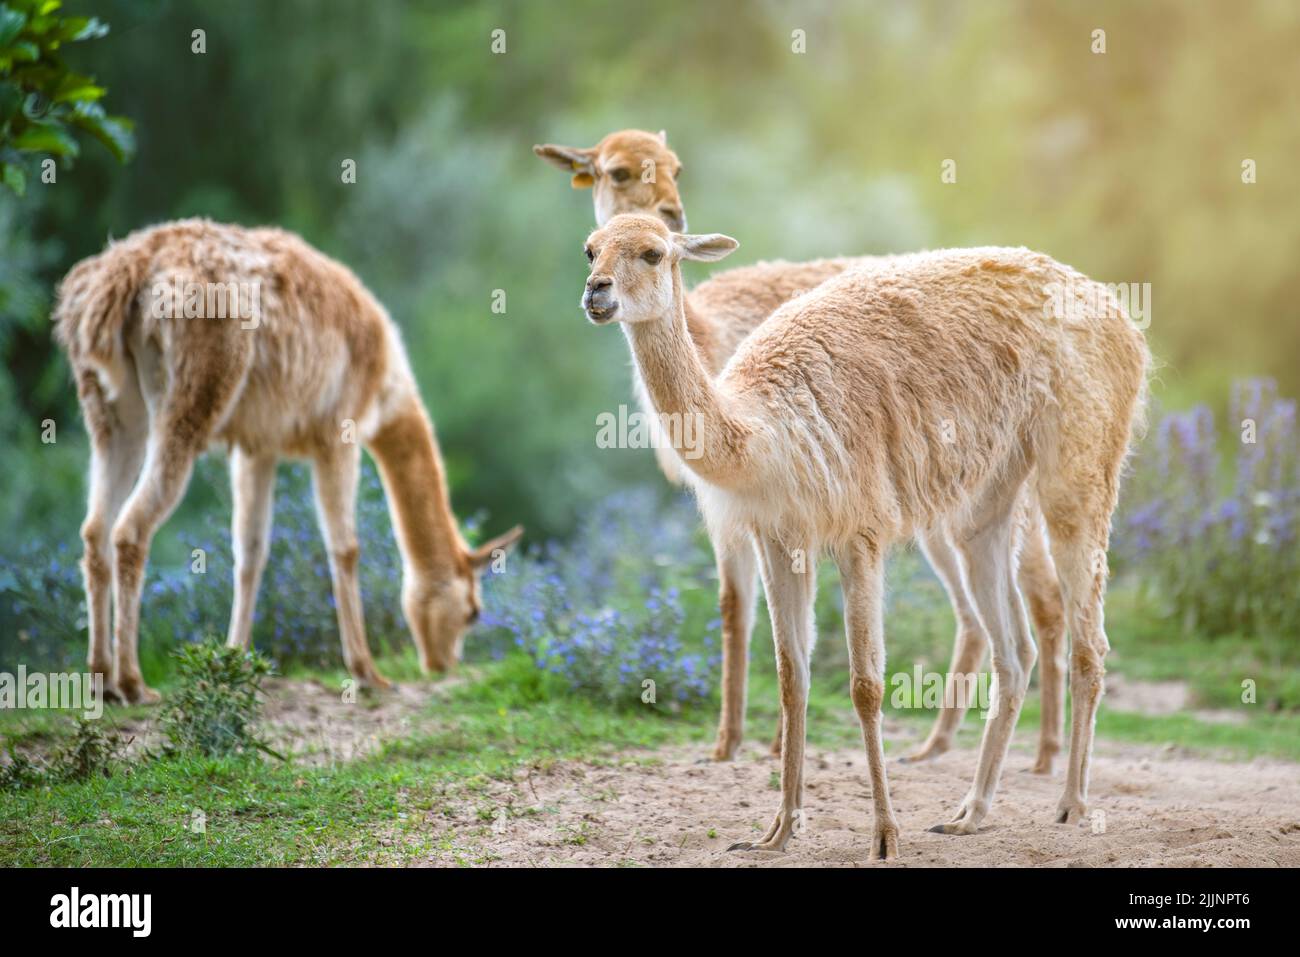 Vicuna. Diverse vicune si levano in piedi su un hillock nel sole di sera e mangiano l'erba. Un animale simile a un lama o alpaca. Foto Stock